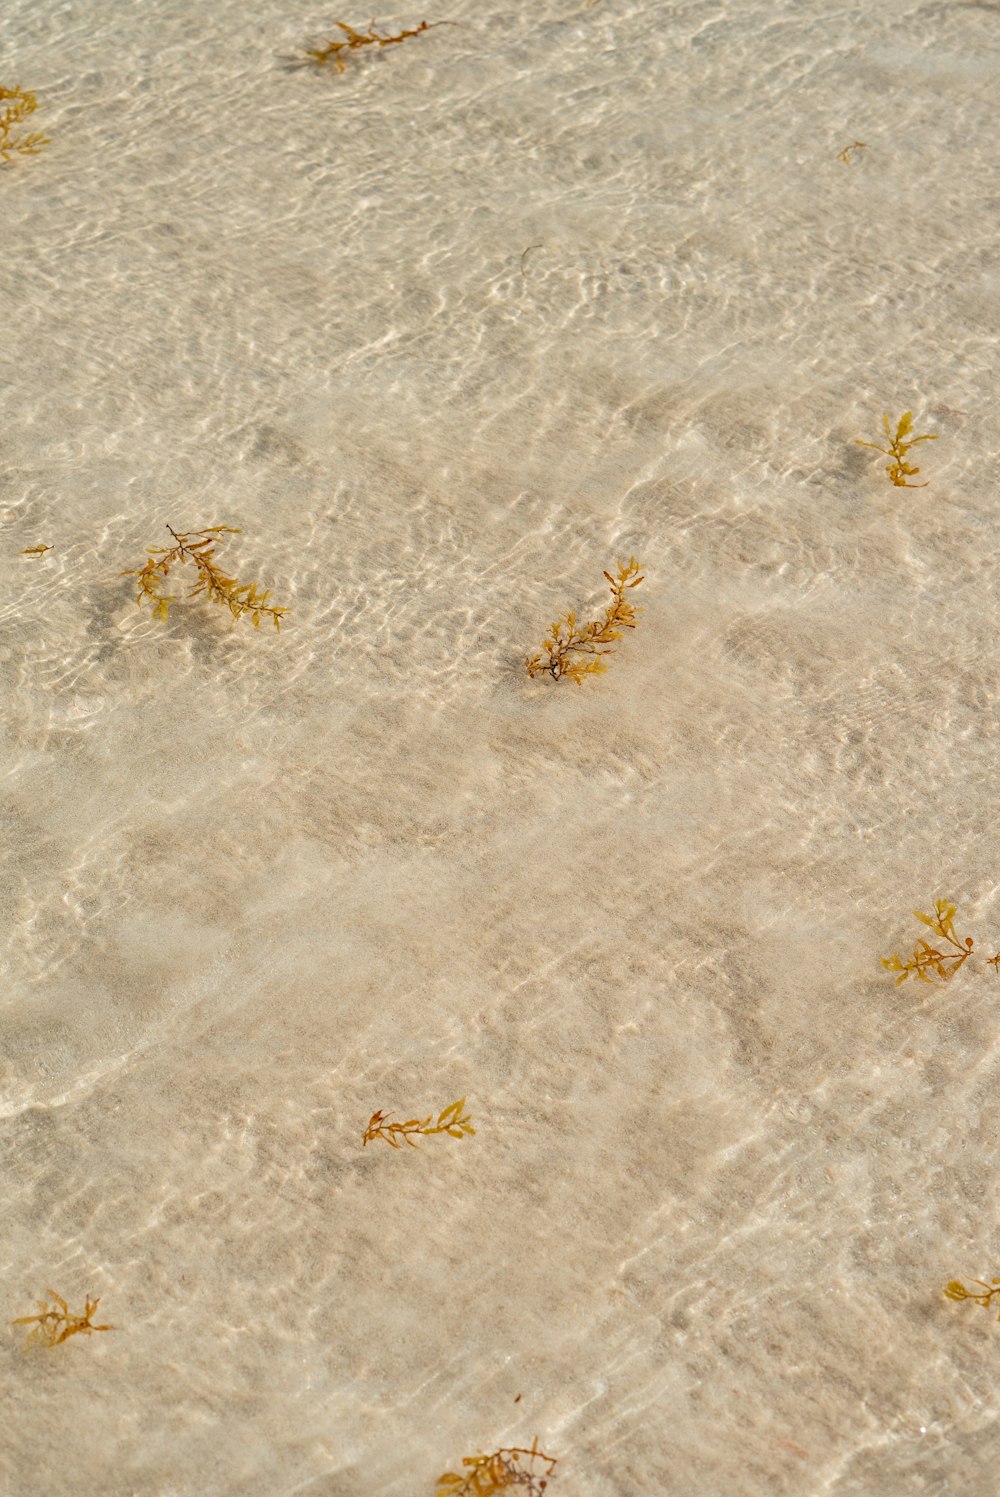 um grupo de algas marinhas flutuando no topo de uma praia de areia